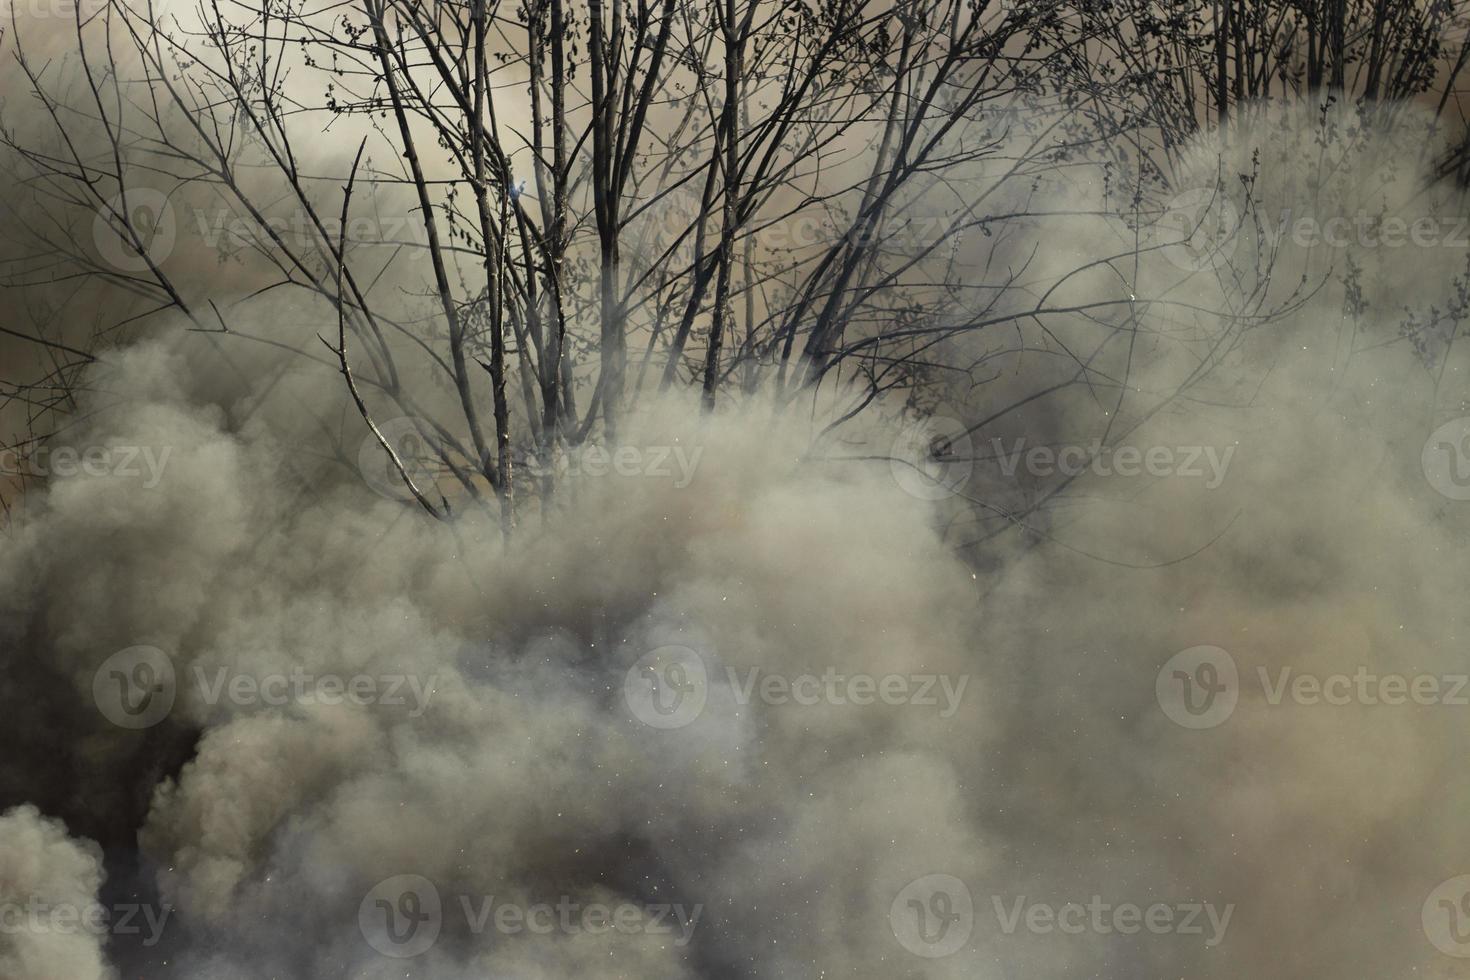 fuego en la calle. humo y fuego. el vertedero está ardiendo. peligros ambientales. foto